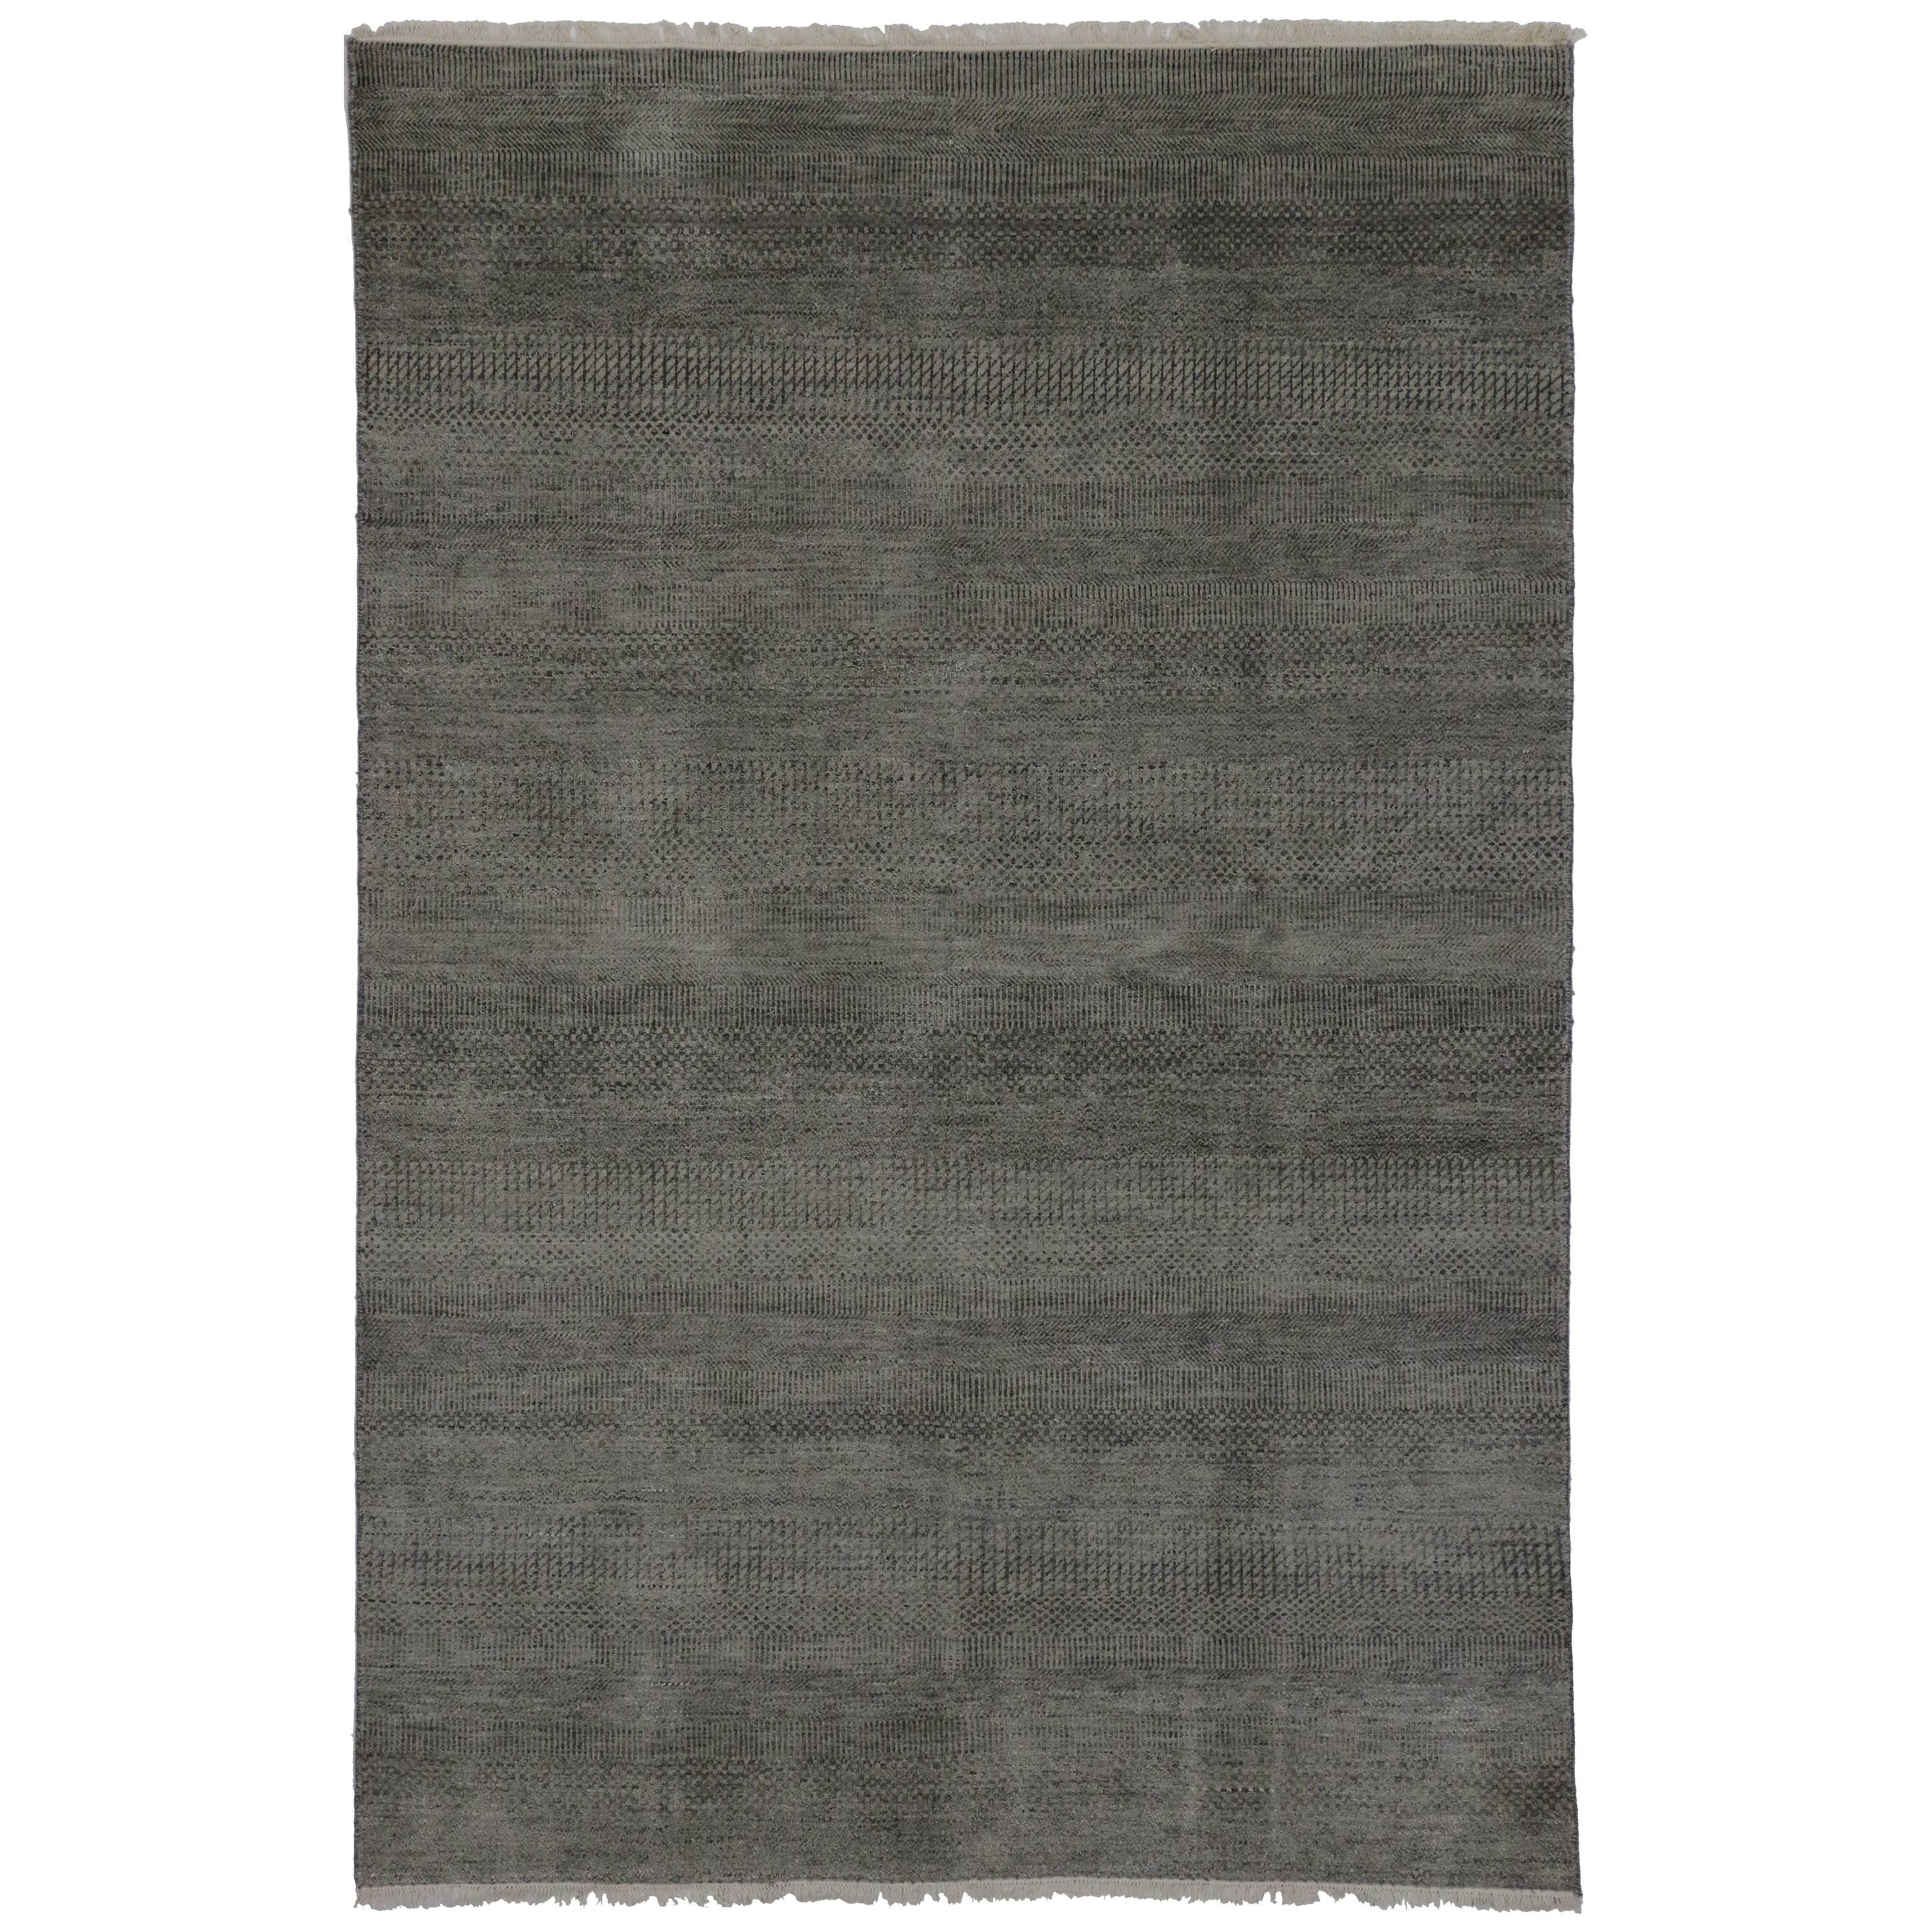 Nouveau tapis gris contemporain transitionnel avec style international minimaliste 